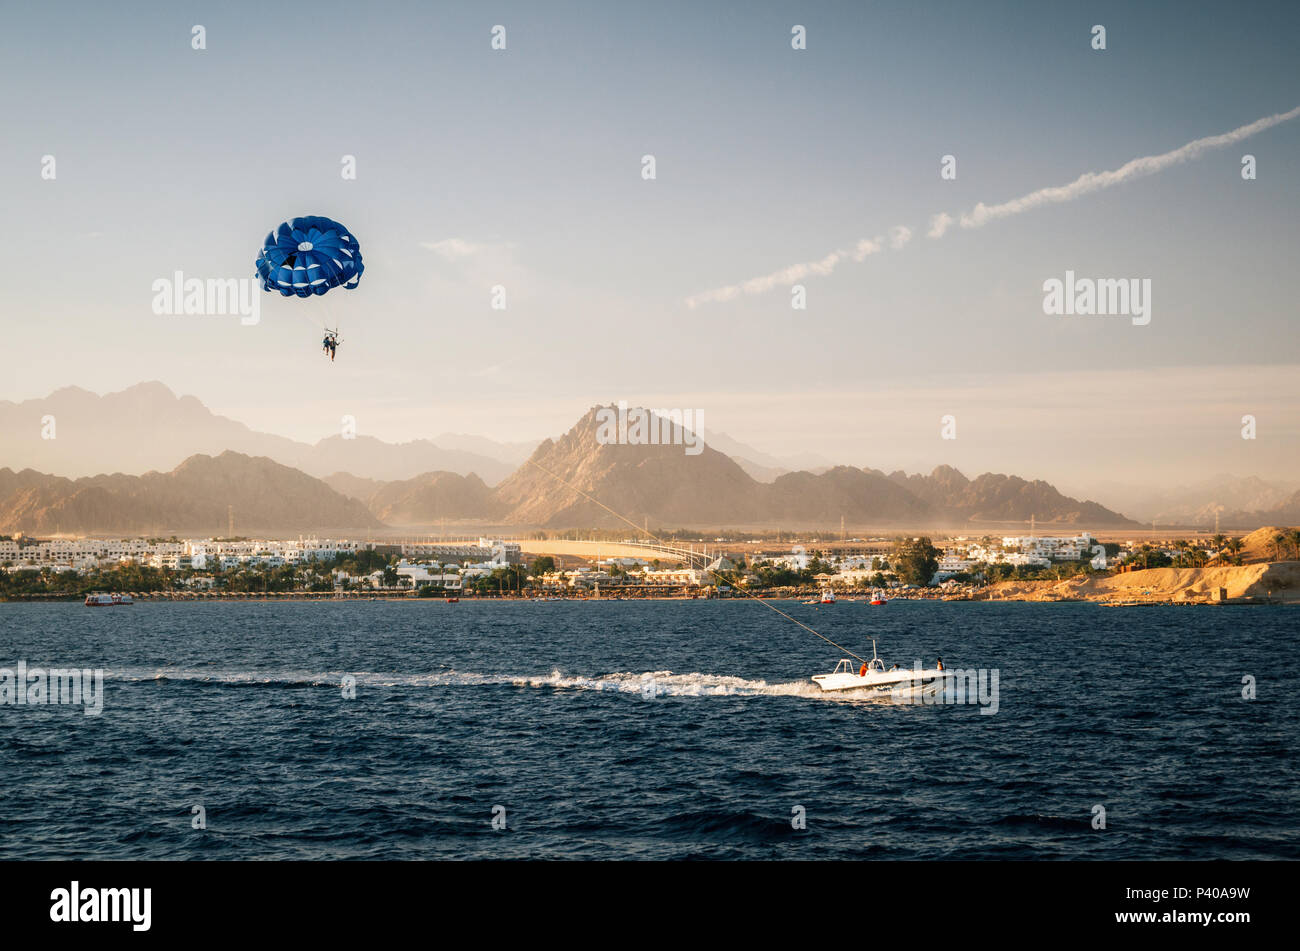 Le parapente dans le ciel de la plage tracté par bateau à moteur au coucher du soleil. Sharm el Sheikh, Mer Rouge, Sinaï, Egypte Banque D'Images